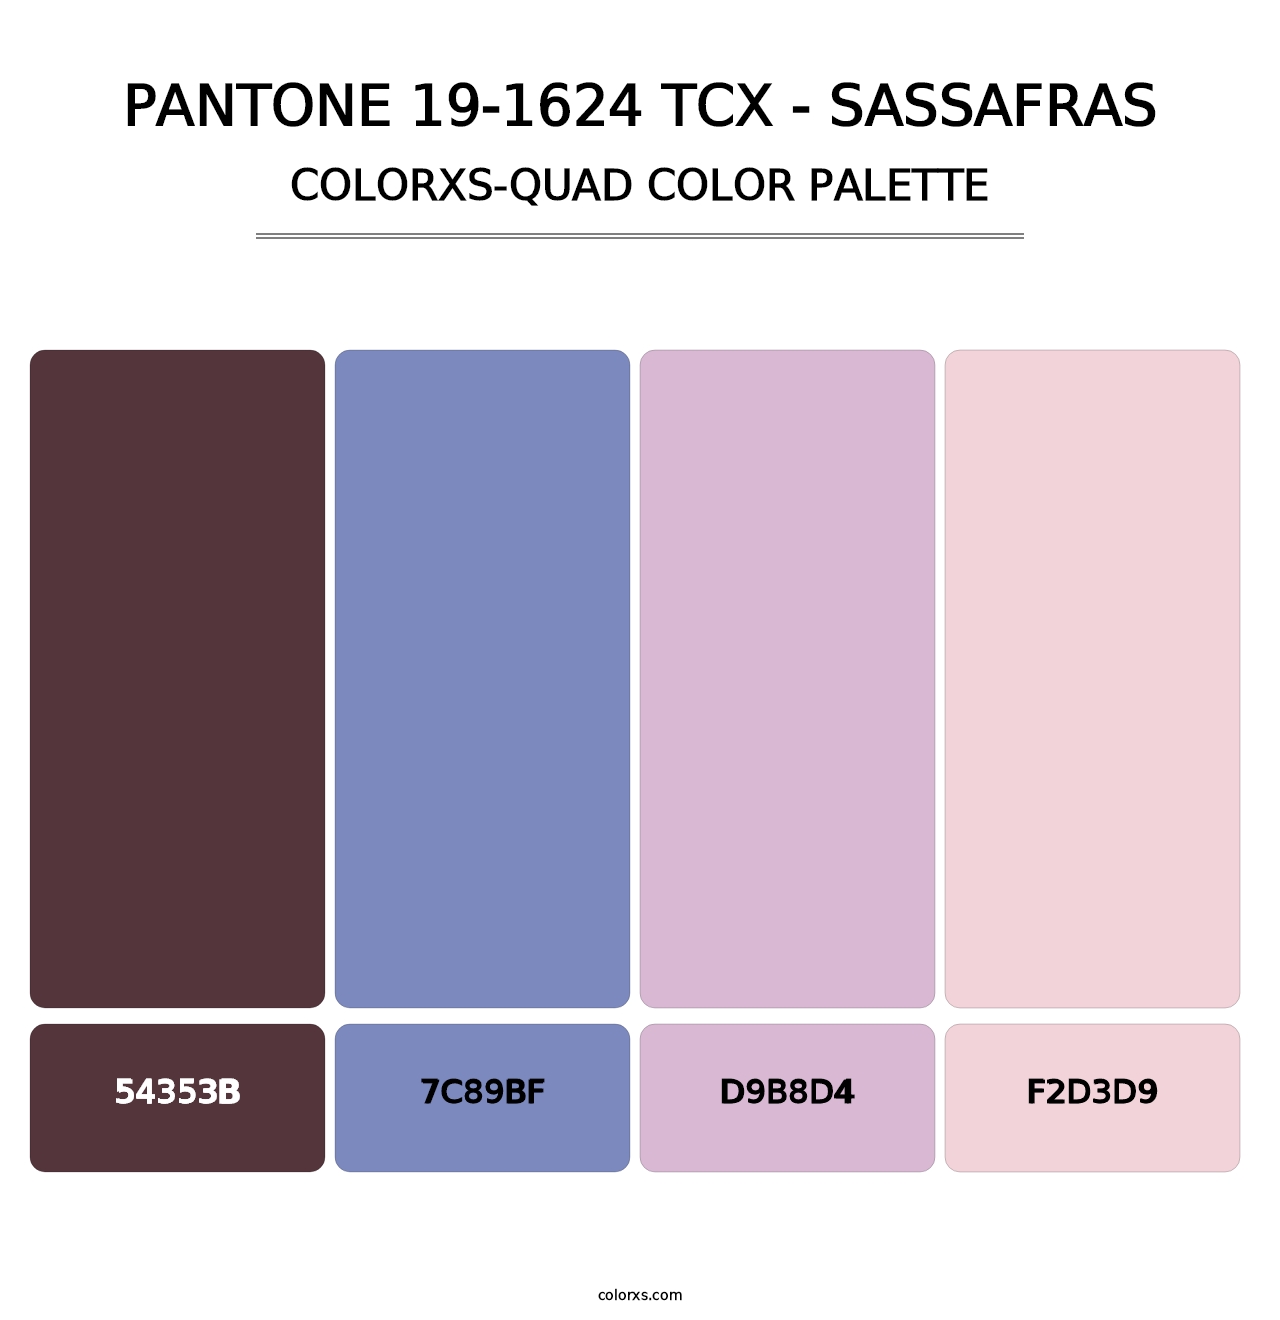 PANTONE 19-1624 TCX - Sassafras - Colorxs Quad Palette